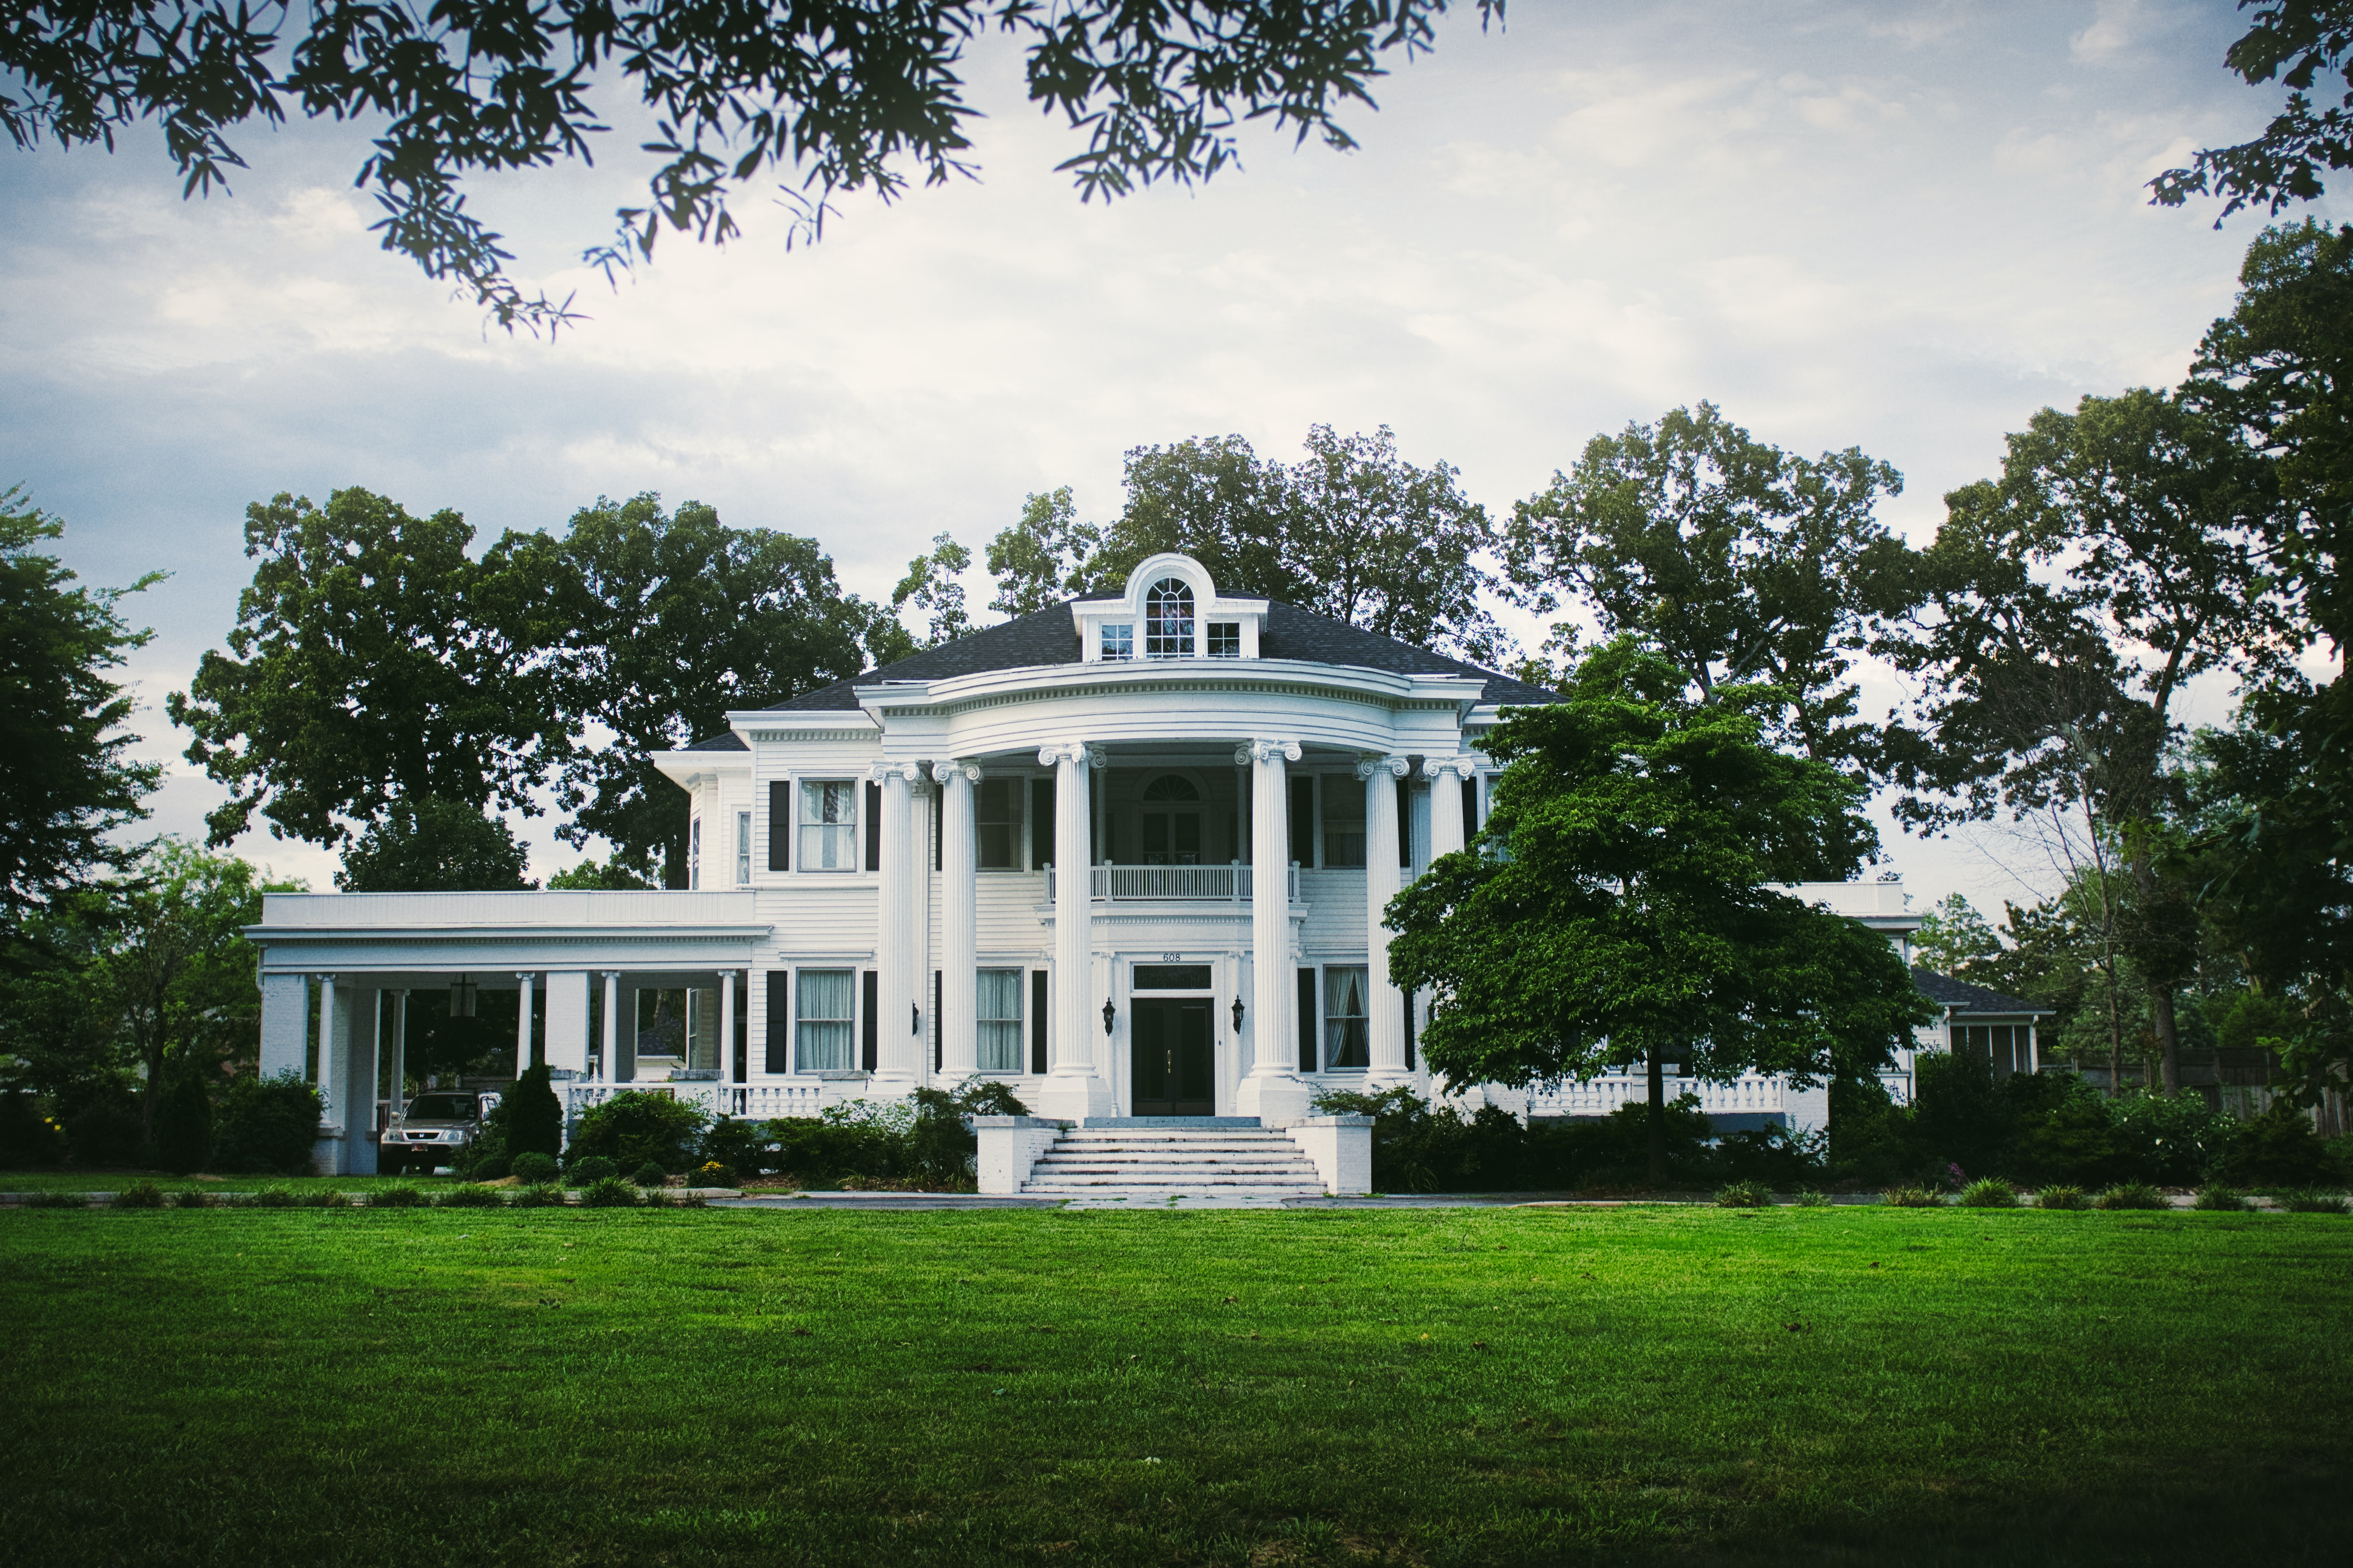 A plantation house in South Carolina